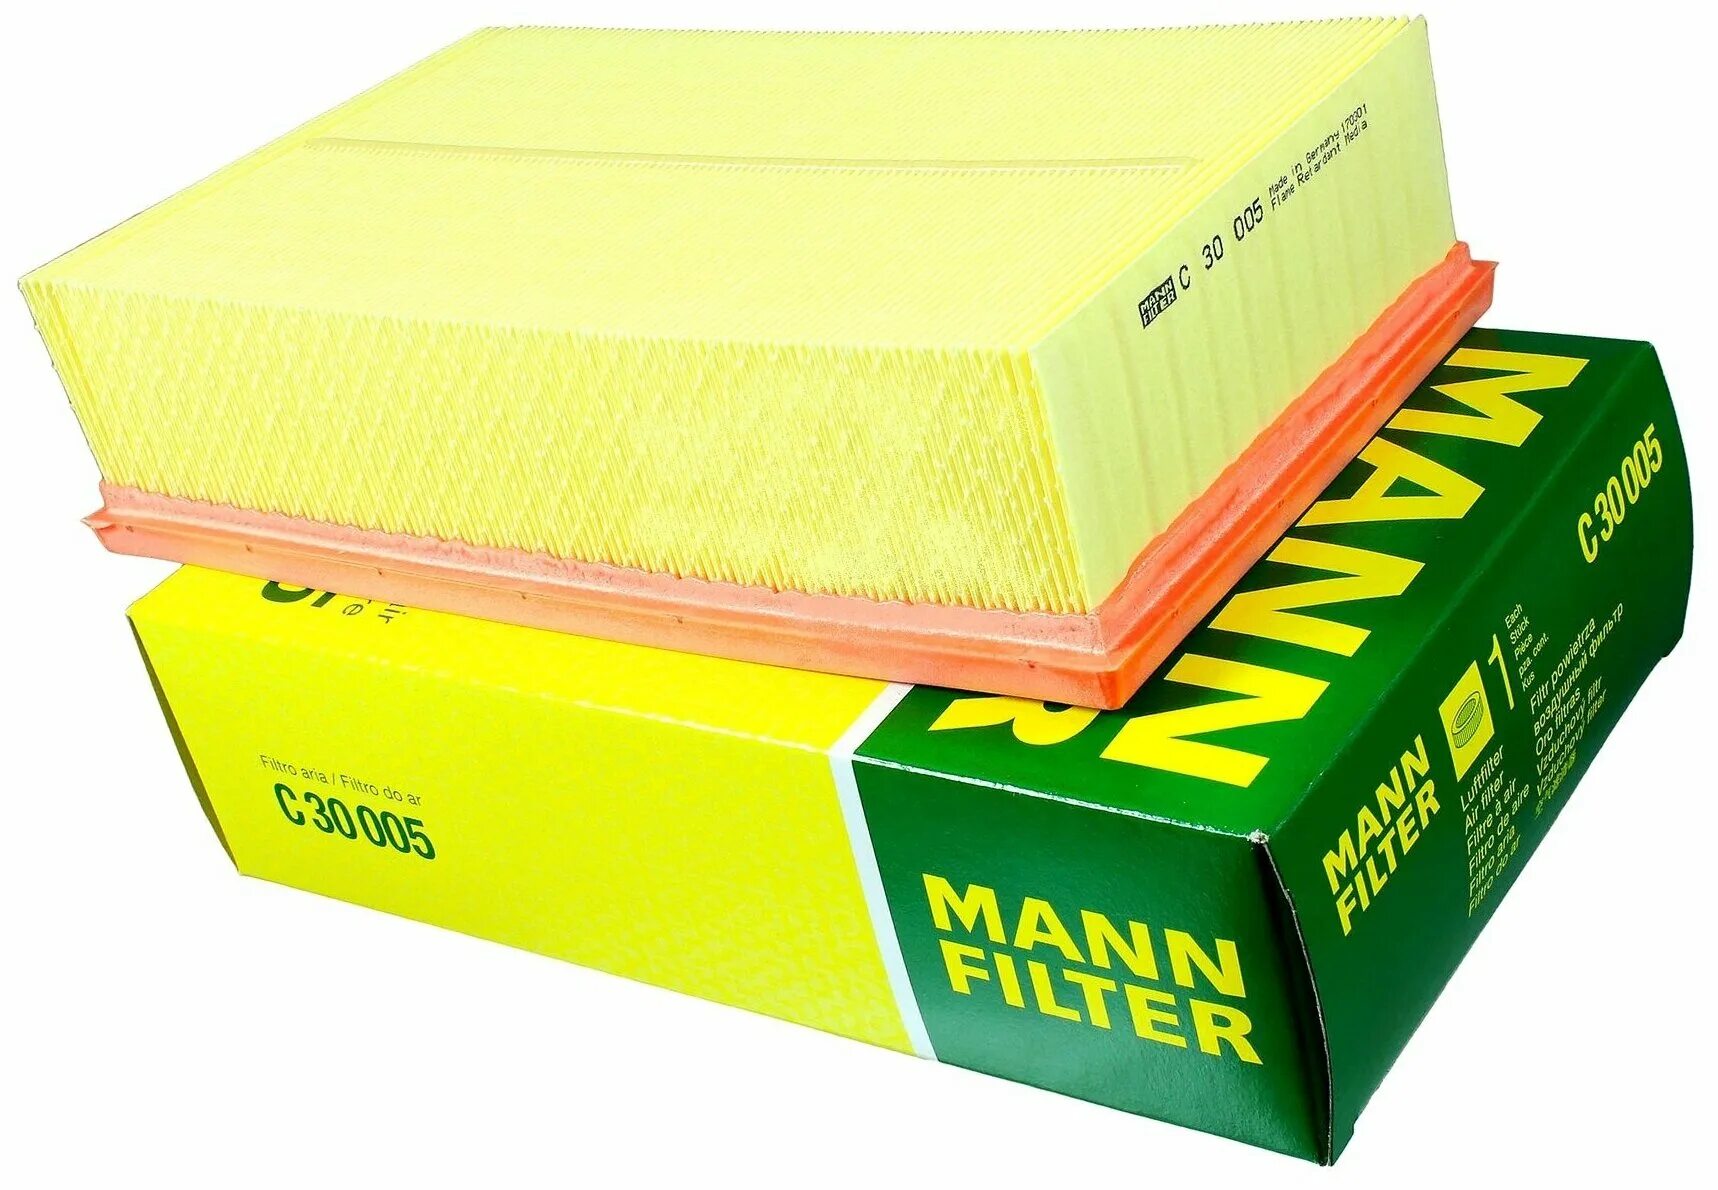 Mann filter воздушный фильтр. Фильтр воздушный Манн фильтр c1465. Фильтр Mann c30005. Воздушный фильтр Mann Filter c12100x. C30005 Mann-Filter фильтр воздушный.